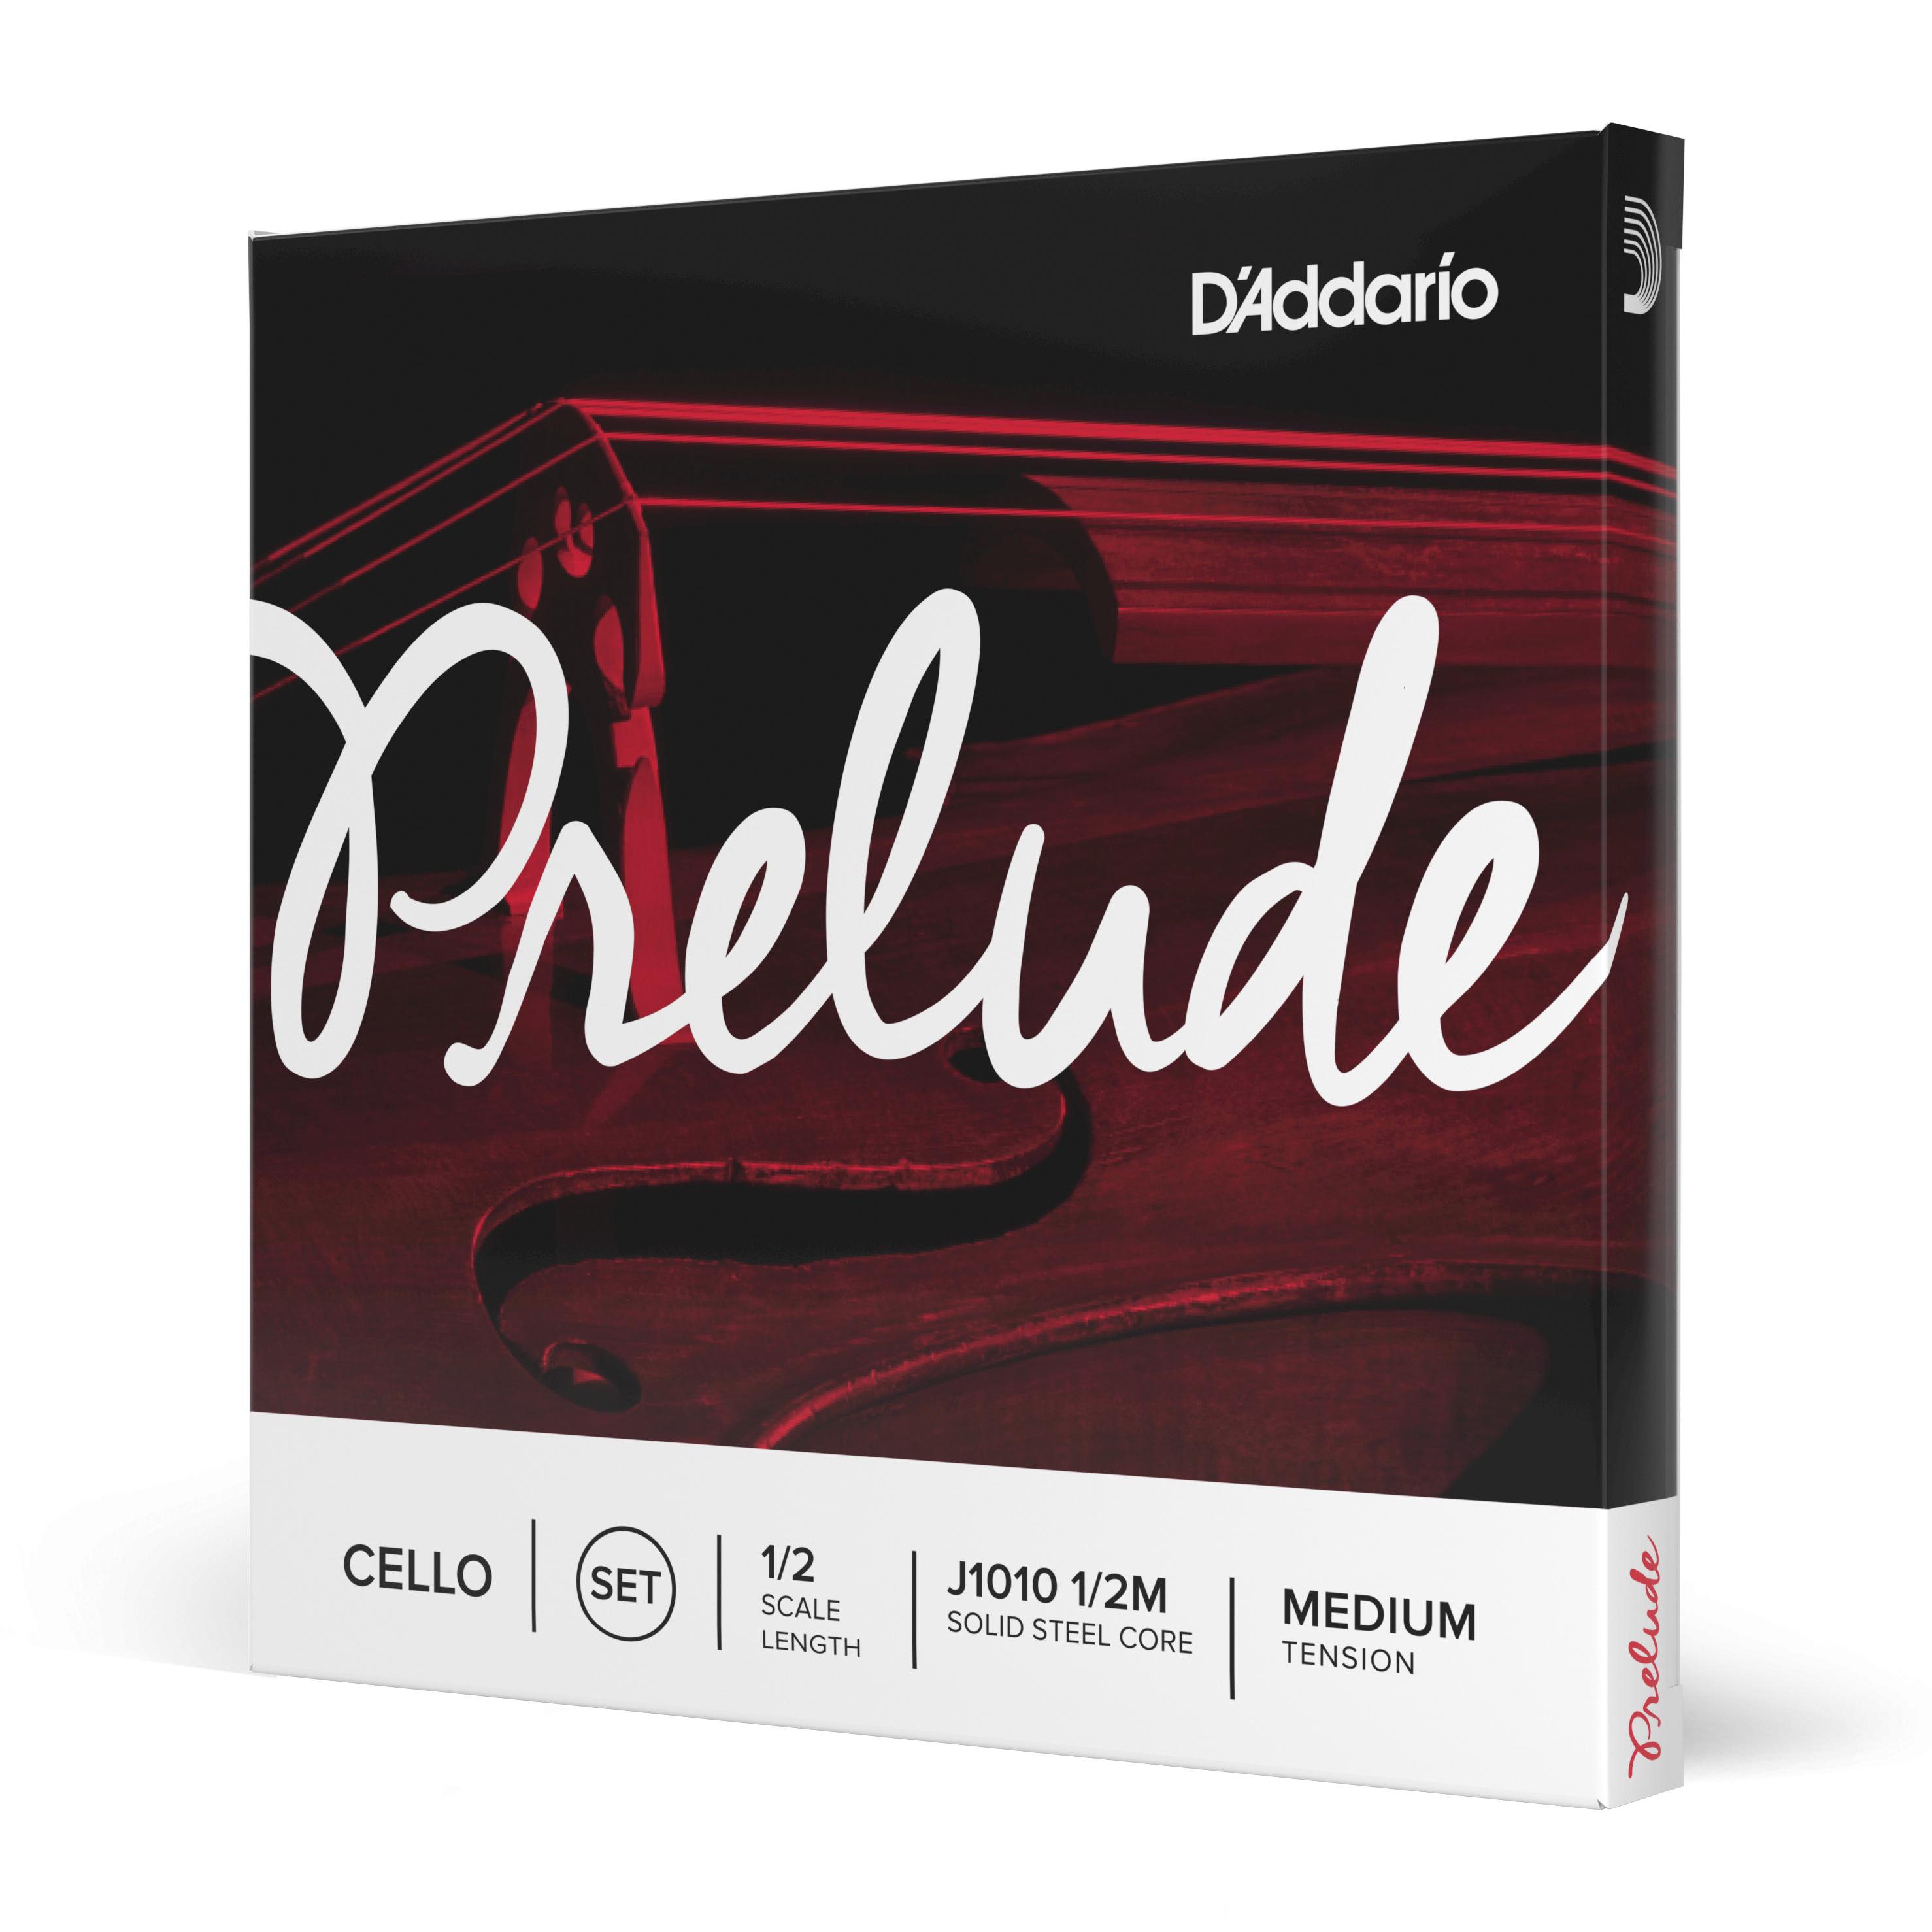 Daddario orchestral it J1010 1/2m set di corde d'addario prelude per violoncello, scala 1/2, tensione media